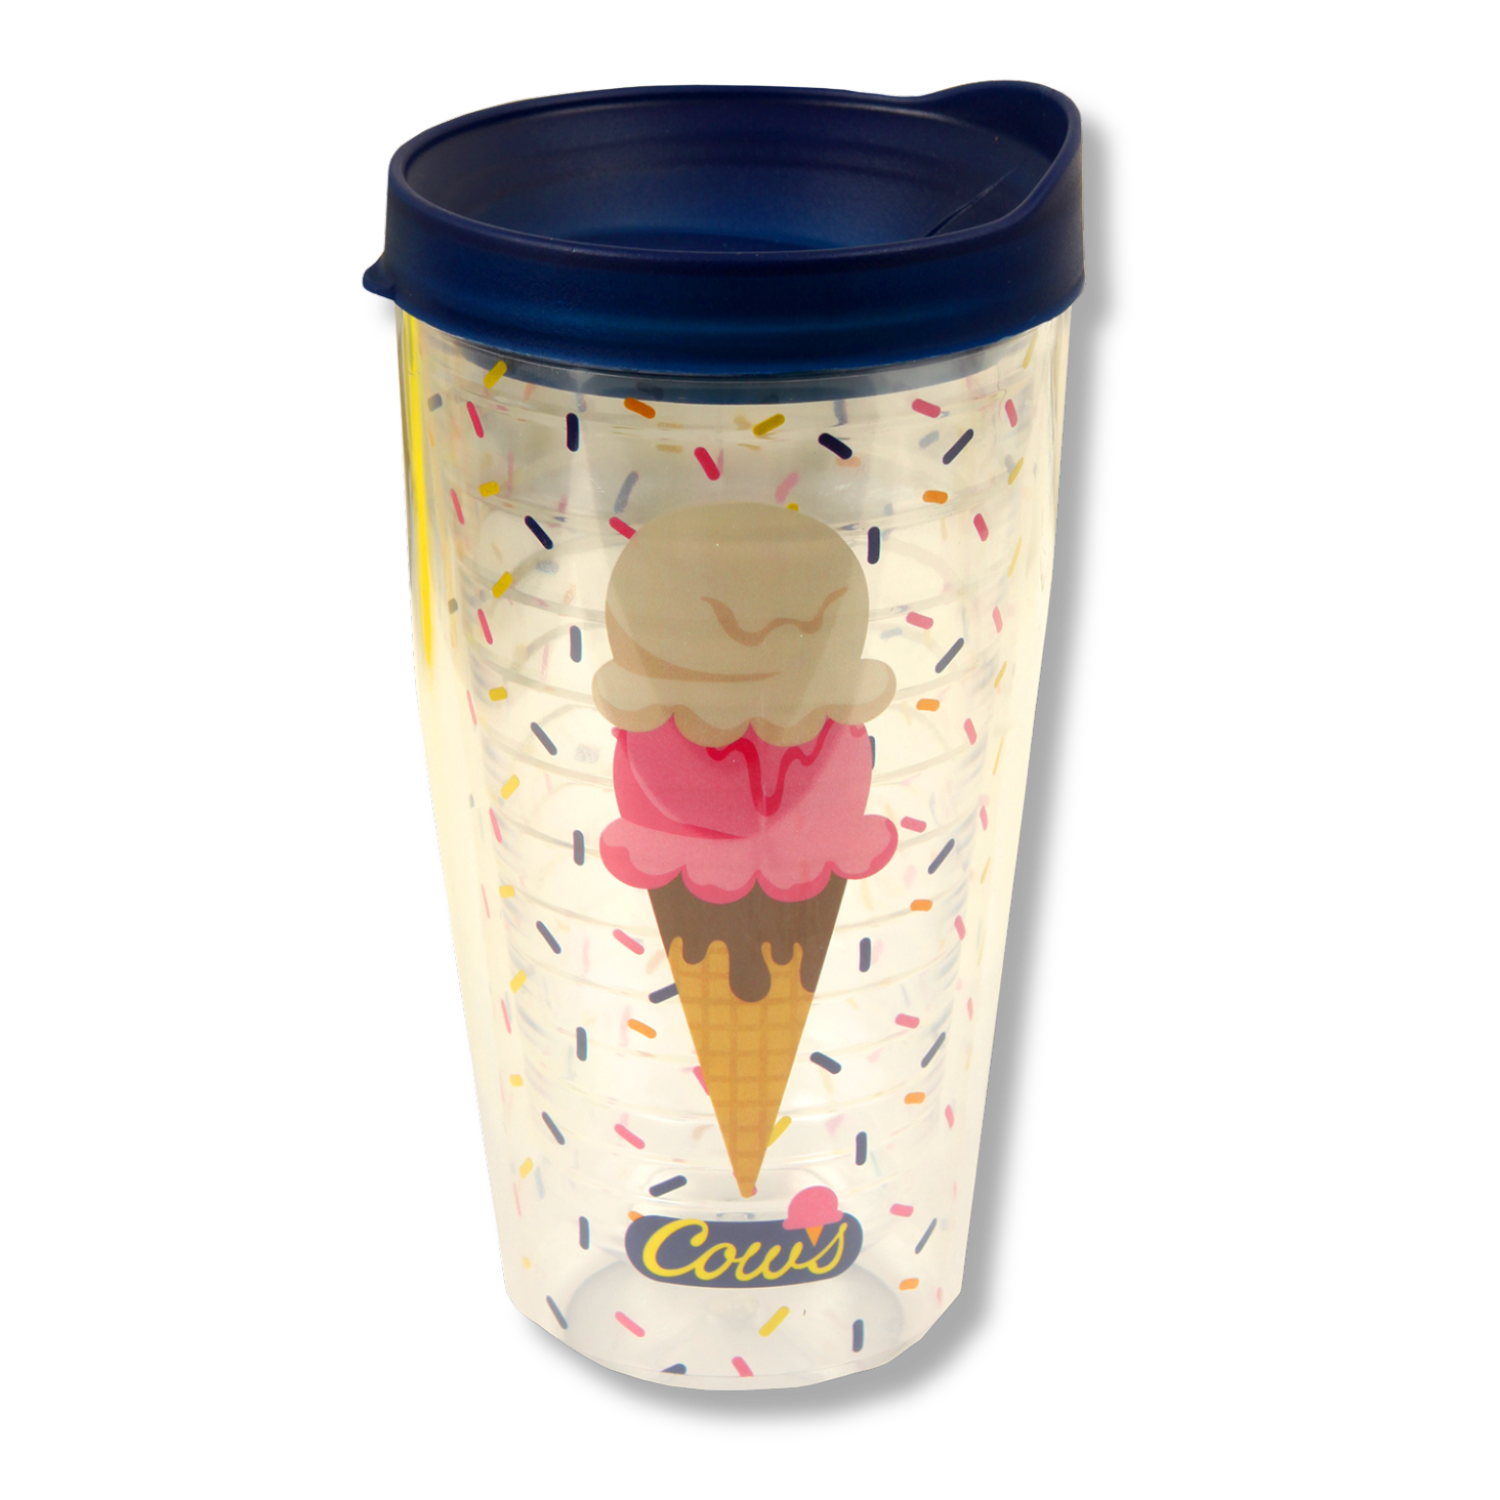 Tumbler - Ice Cream Cone